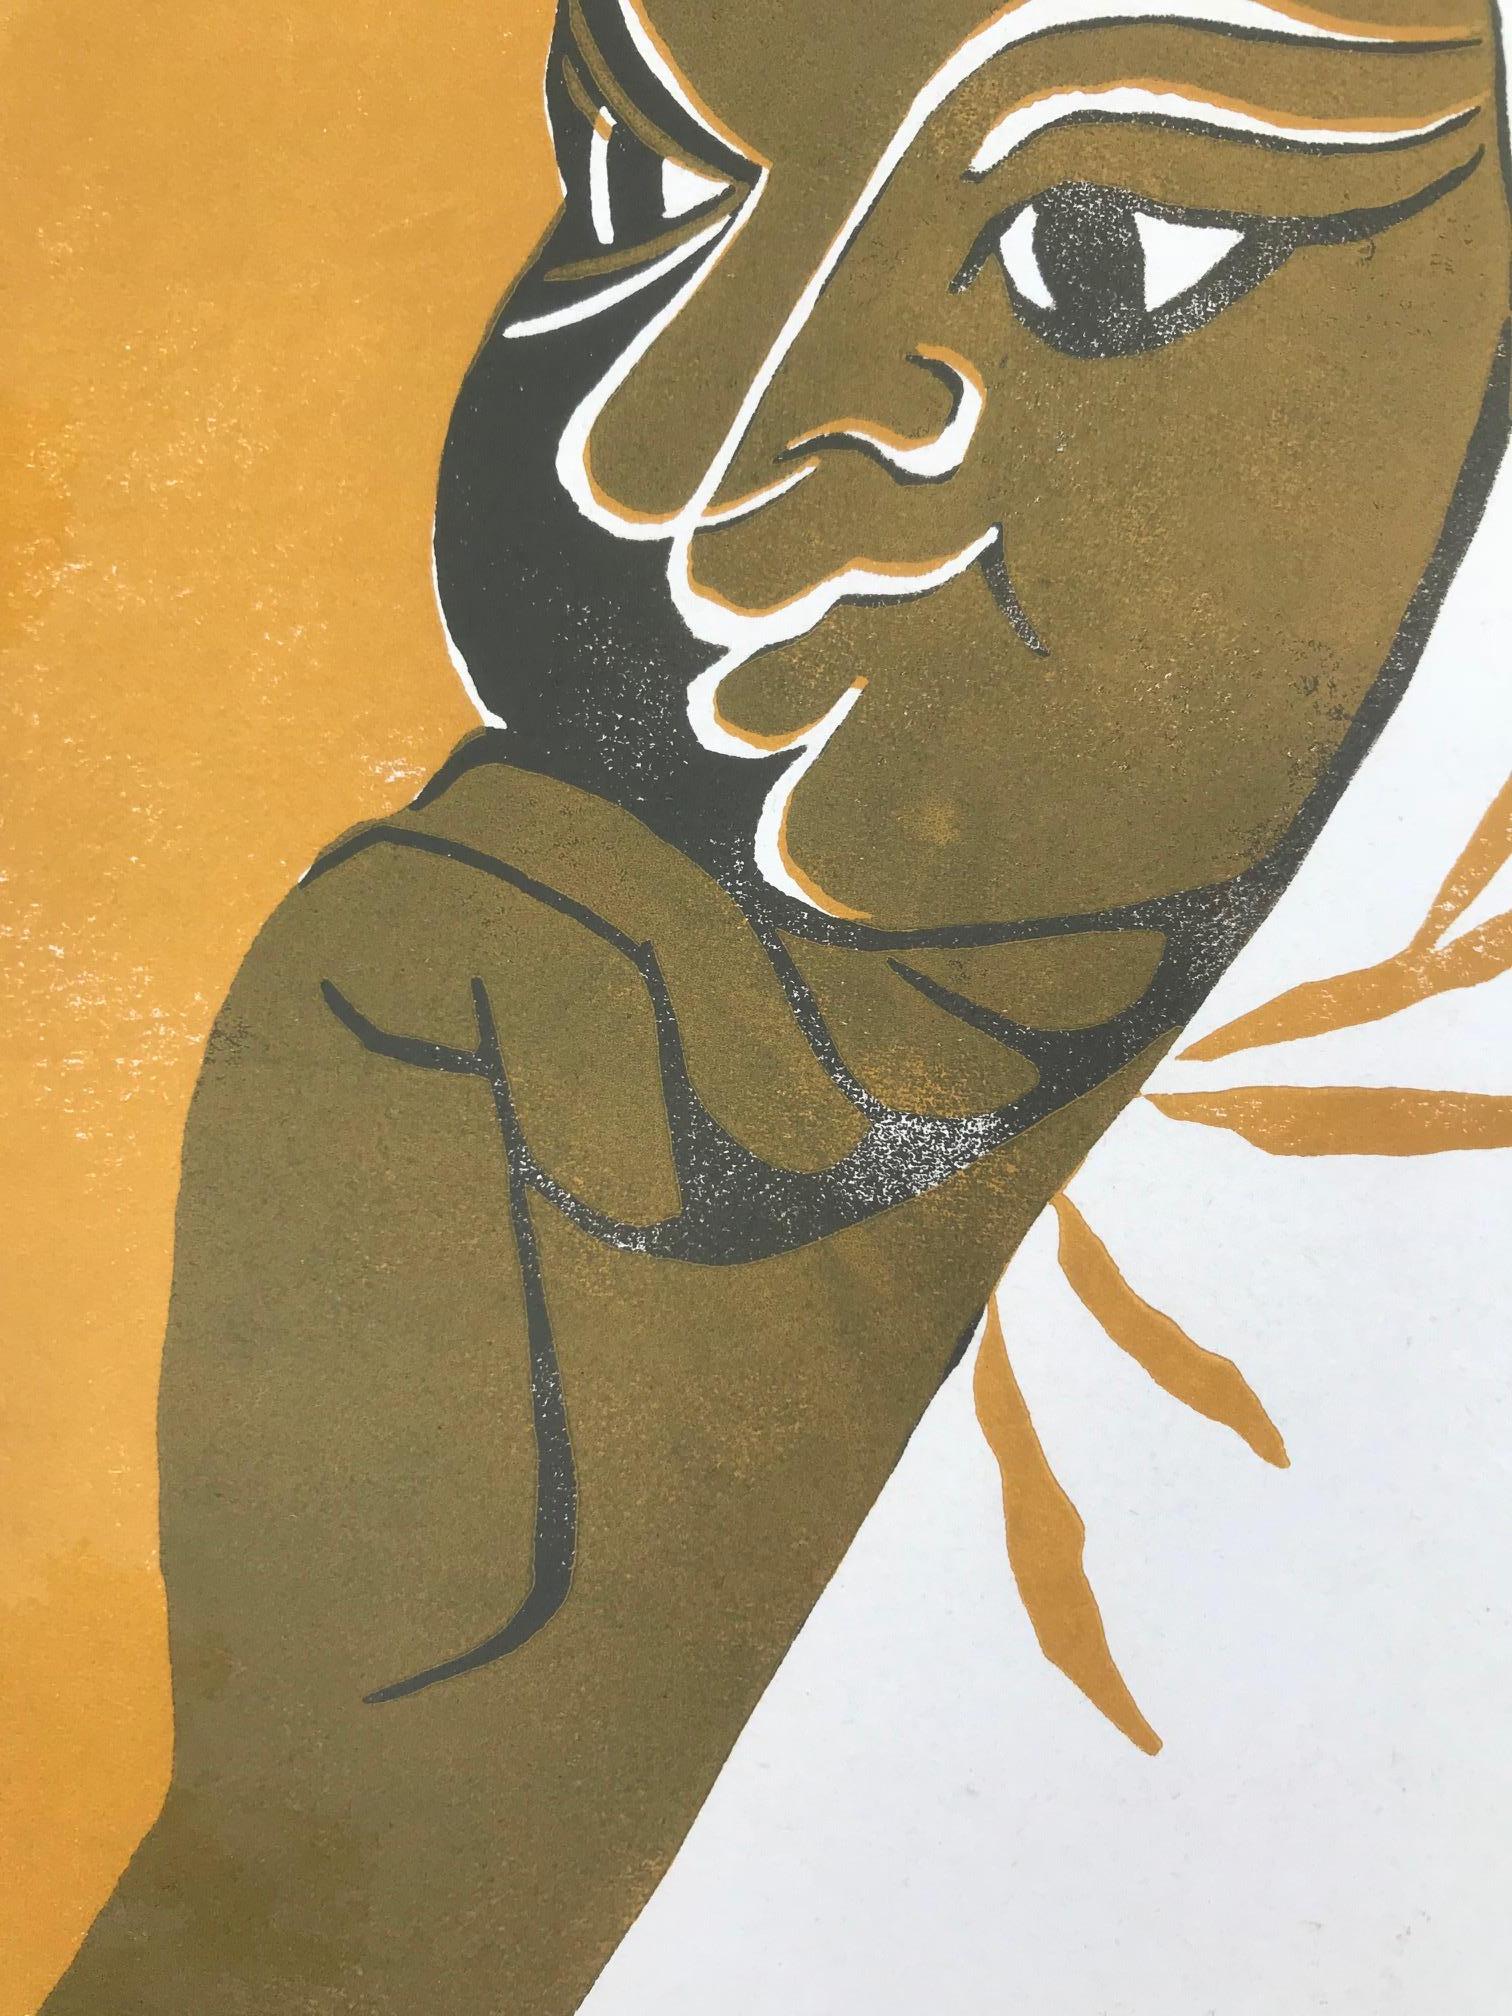 Goldy 1 (Ausgabe 76/100) (Abstrakt), Print, von Tassow Brhanu